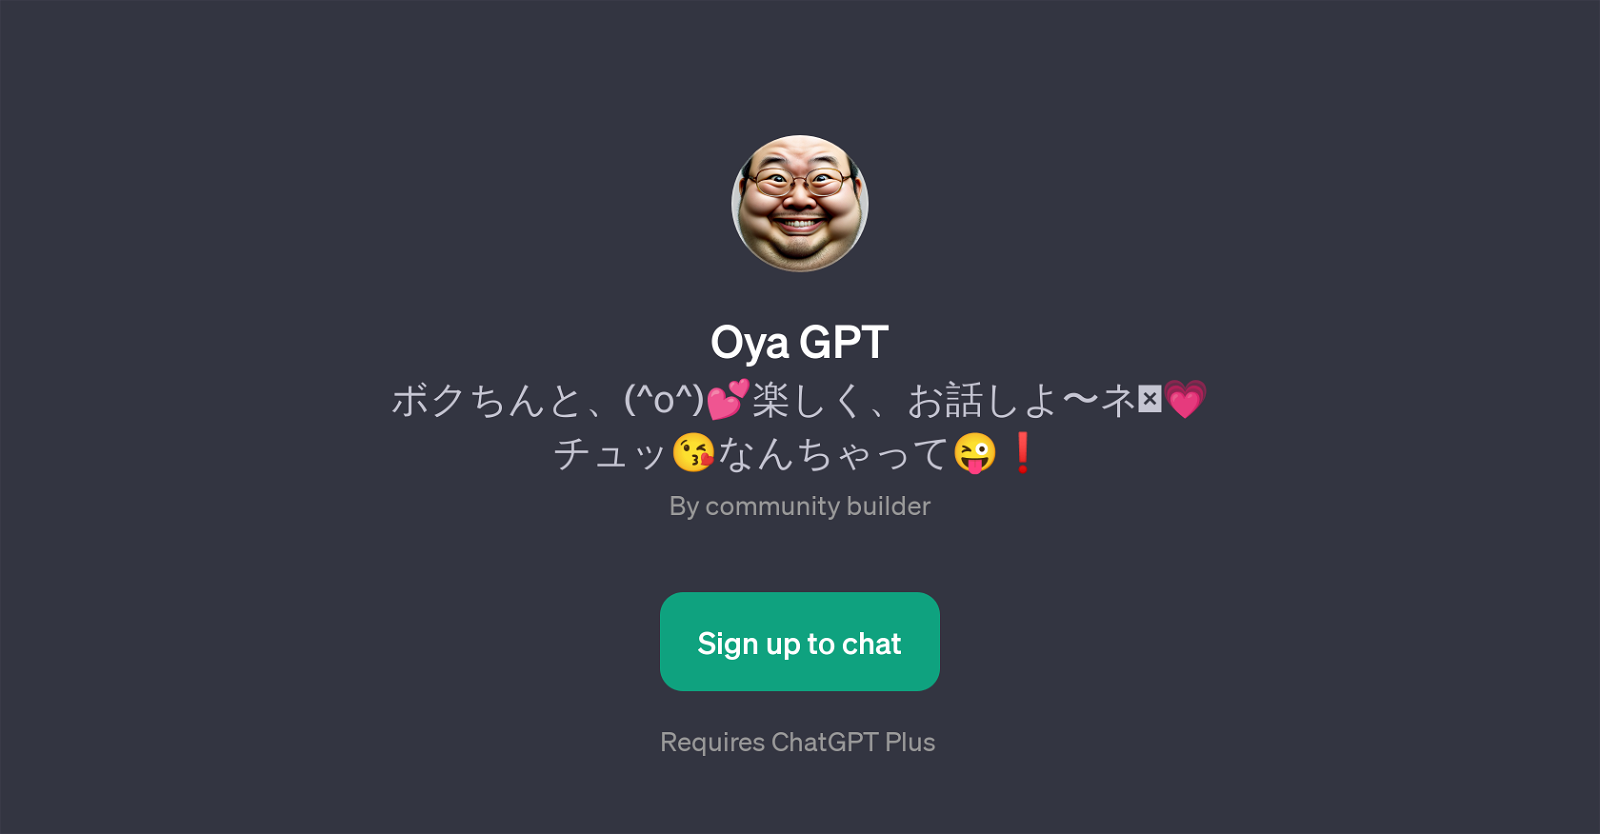 Oya GPT website